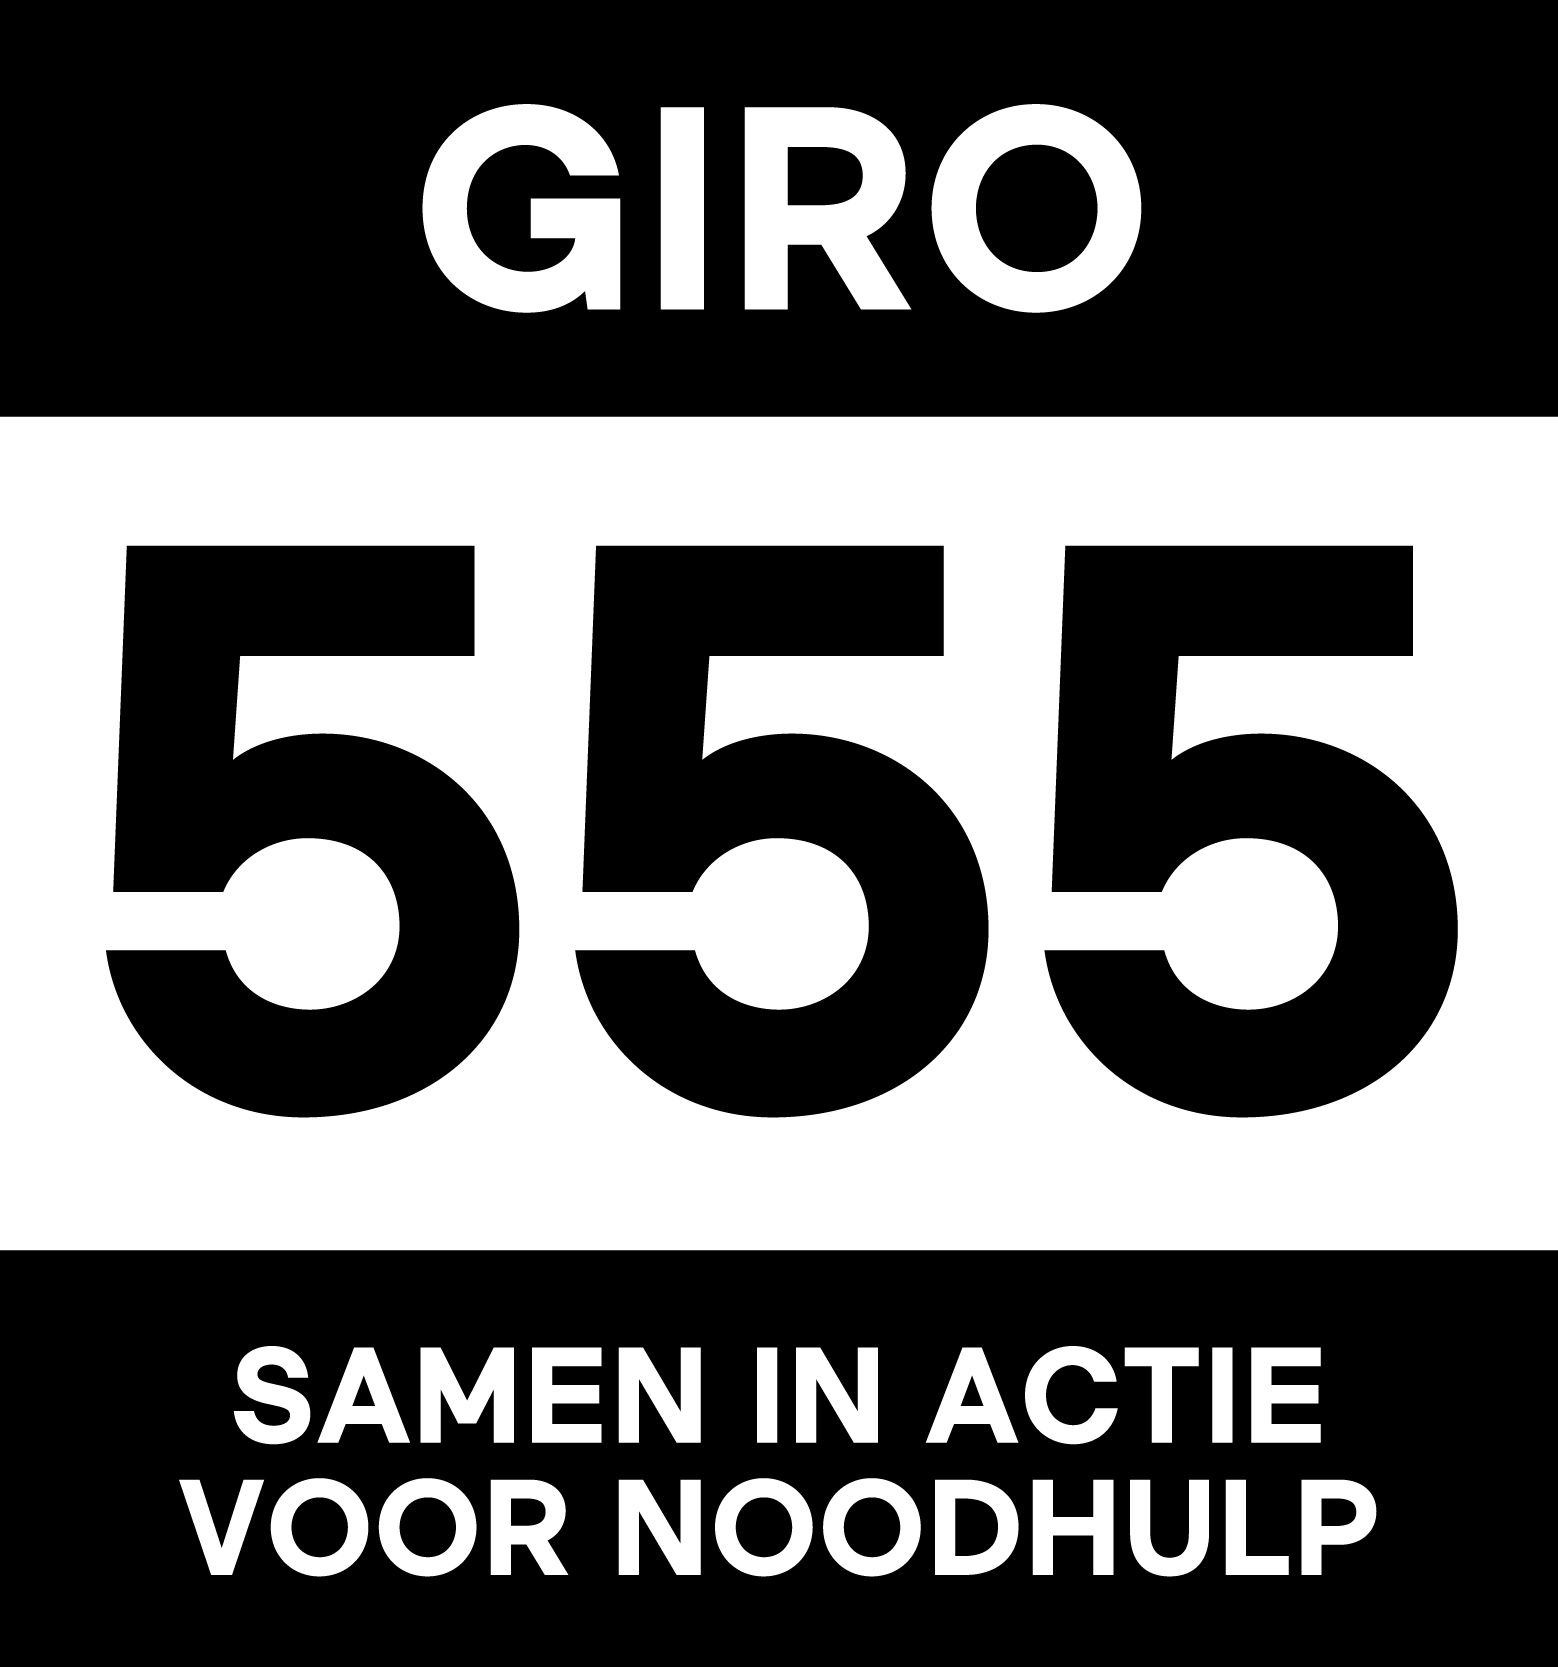 Giro 555